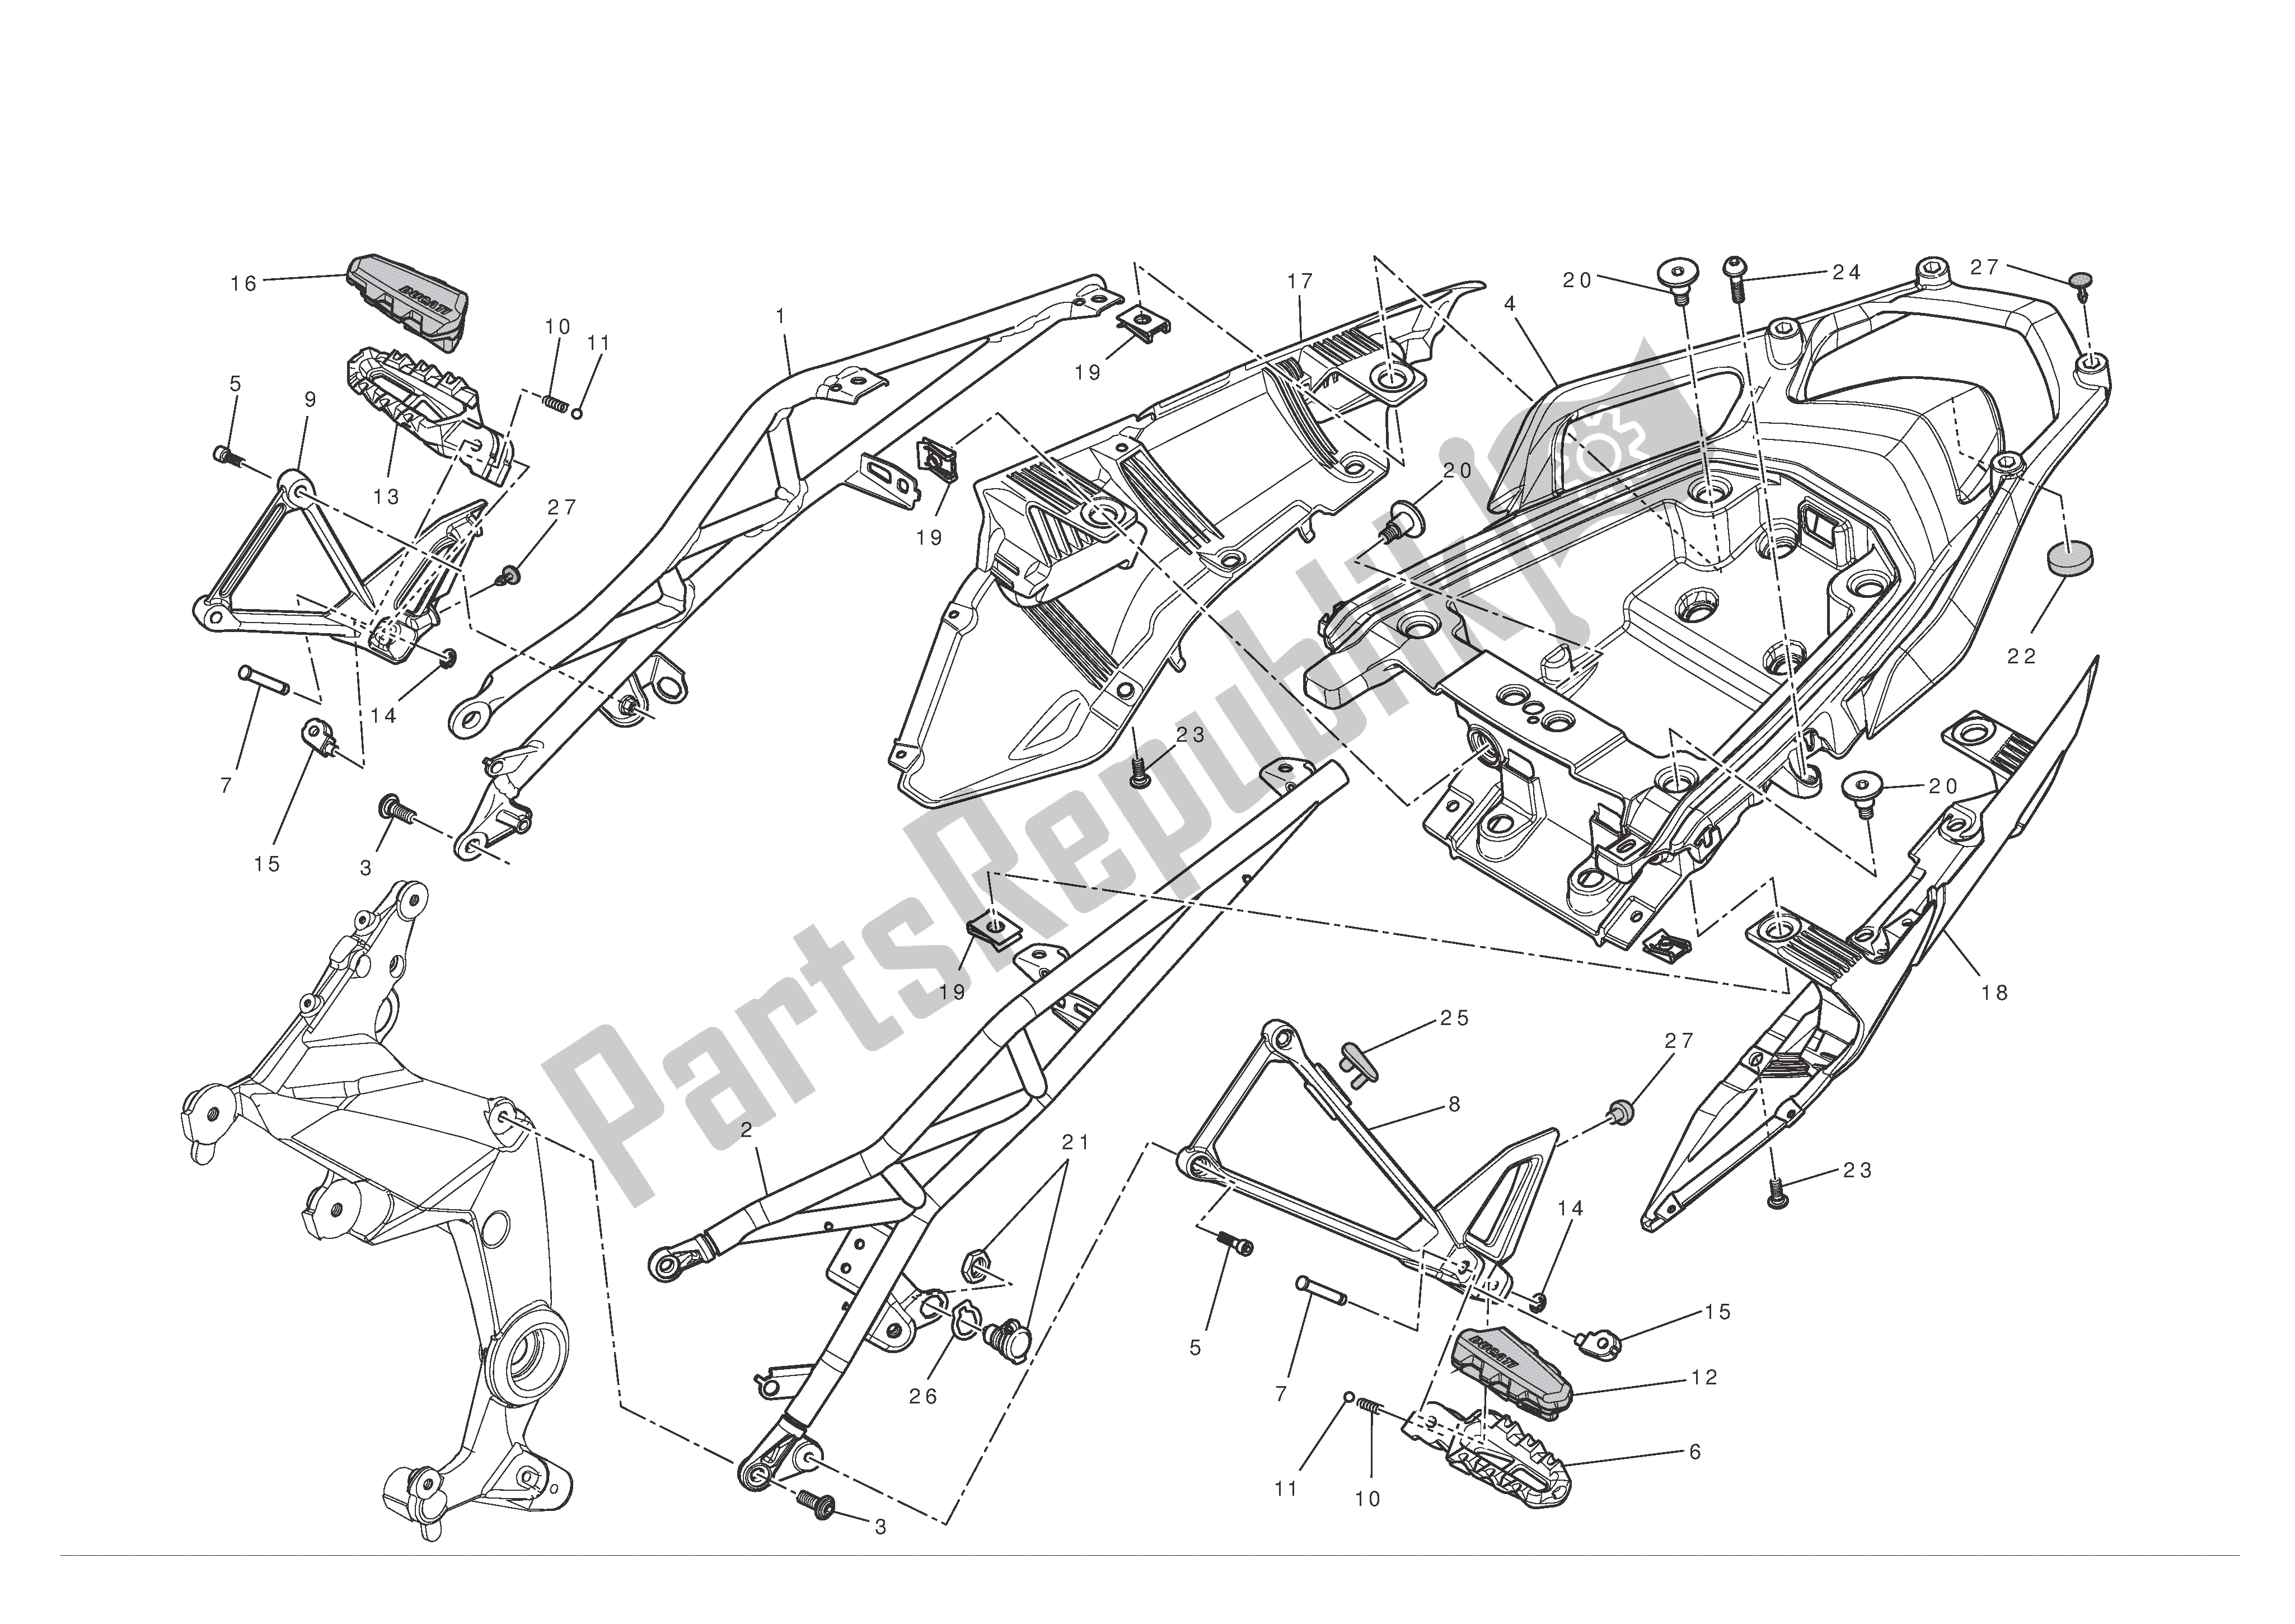 Toutes les pièces pour le Faux-châssis Arrière du Ducati Multistrada S ABS 1200 2010